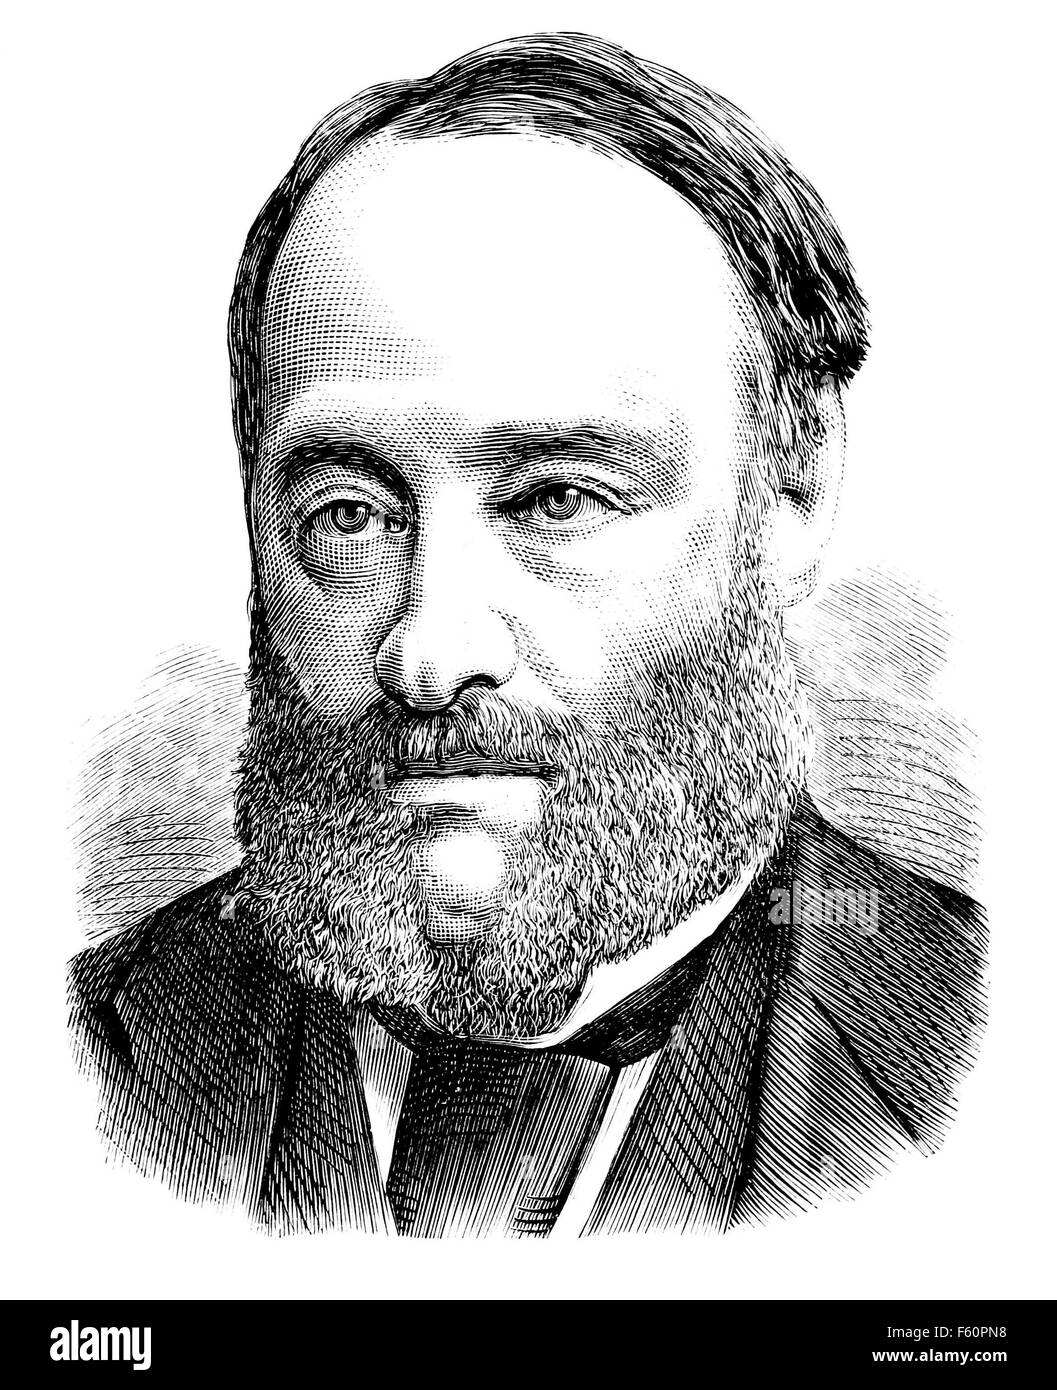 JAMES JOULE (1818-1889) fisico inglese. Incisione dall'American Popular Science mensile pubblicata nel 1874 Foto Stock